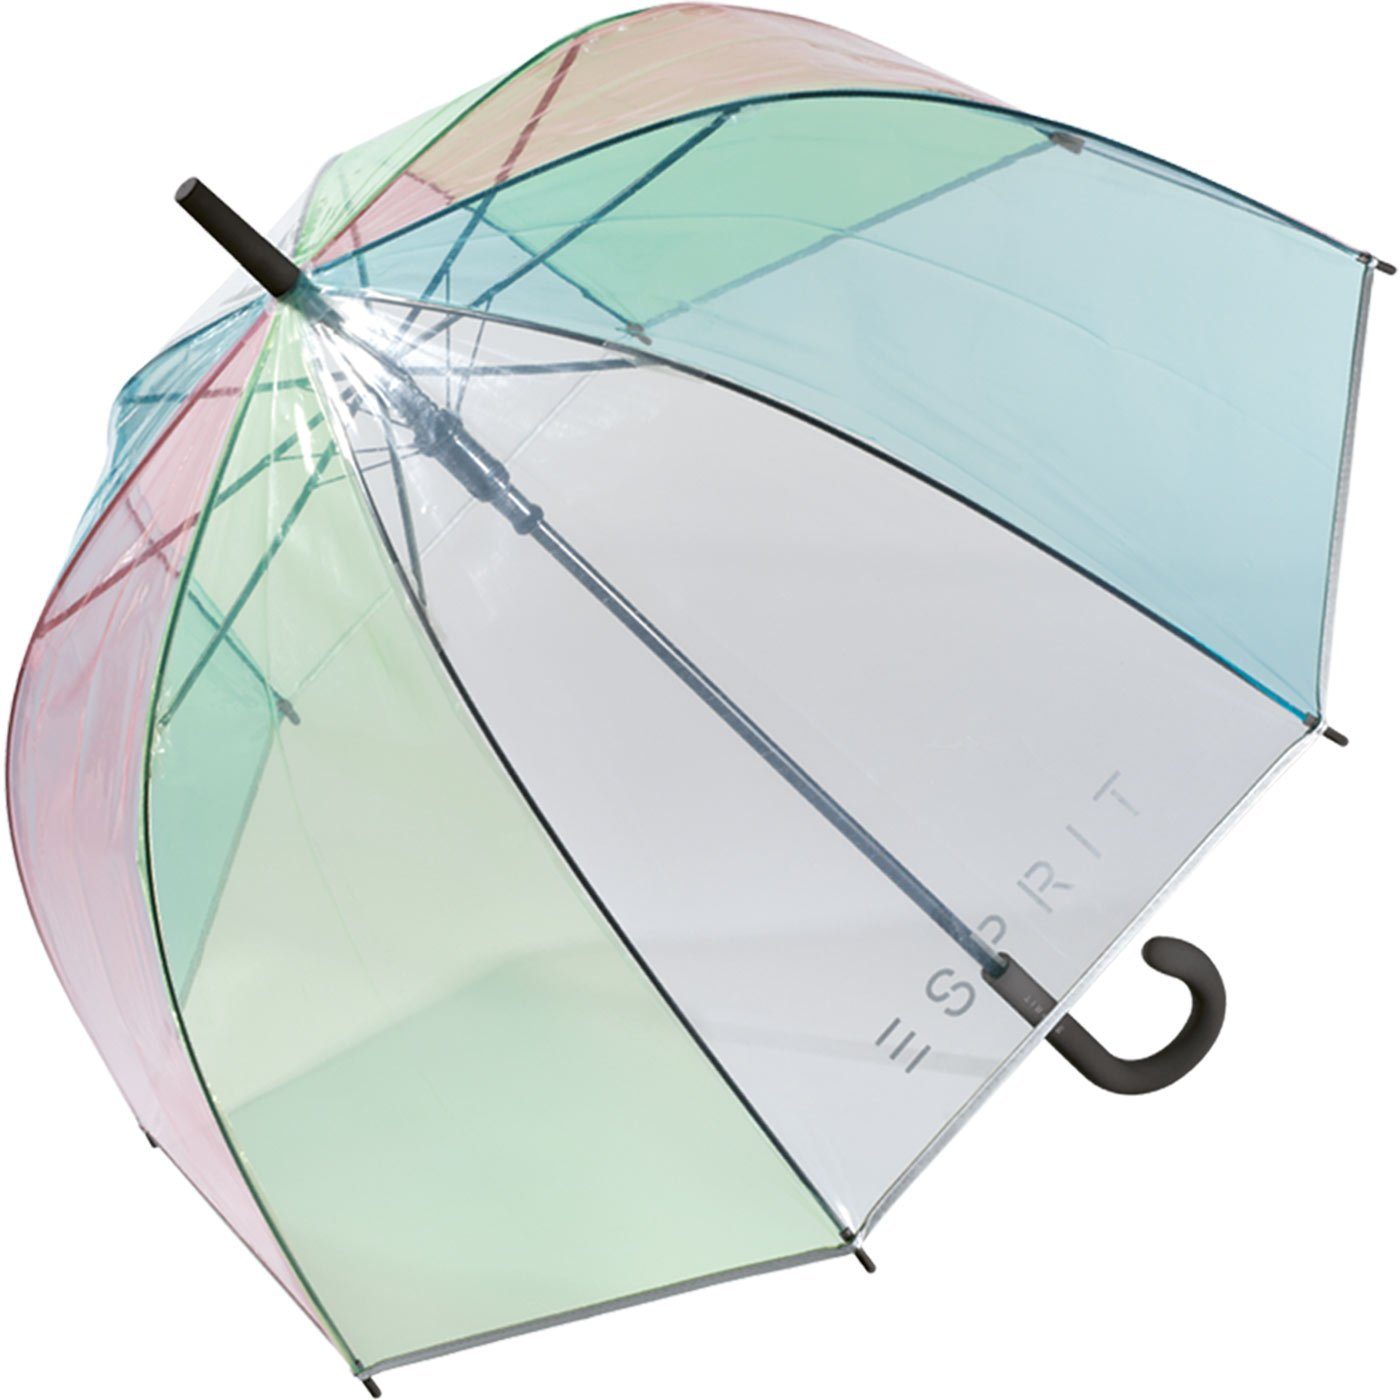 Esprit Langregenschirm Glockenschirm mit transparent, Automatik durchsichtig